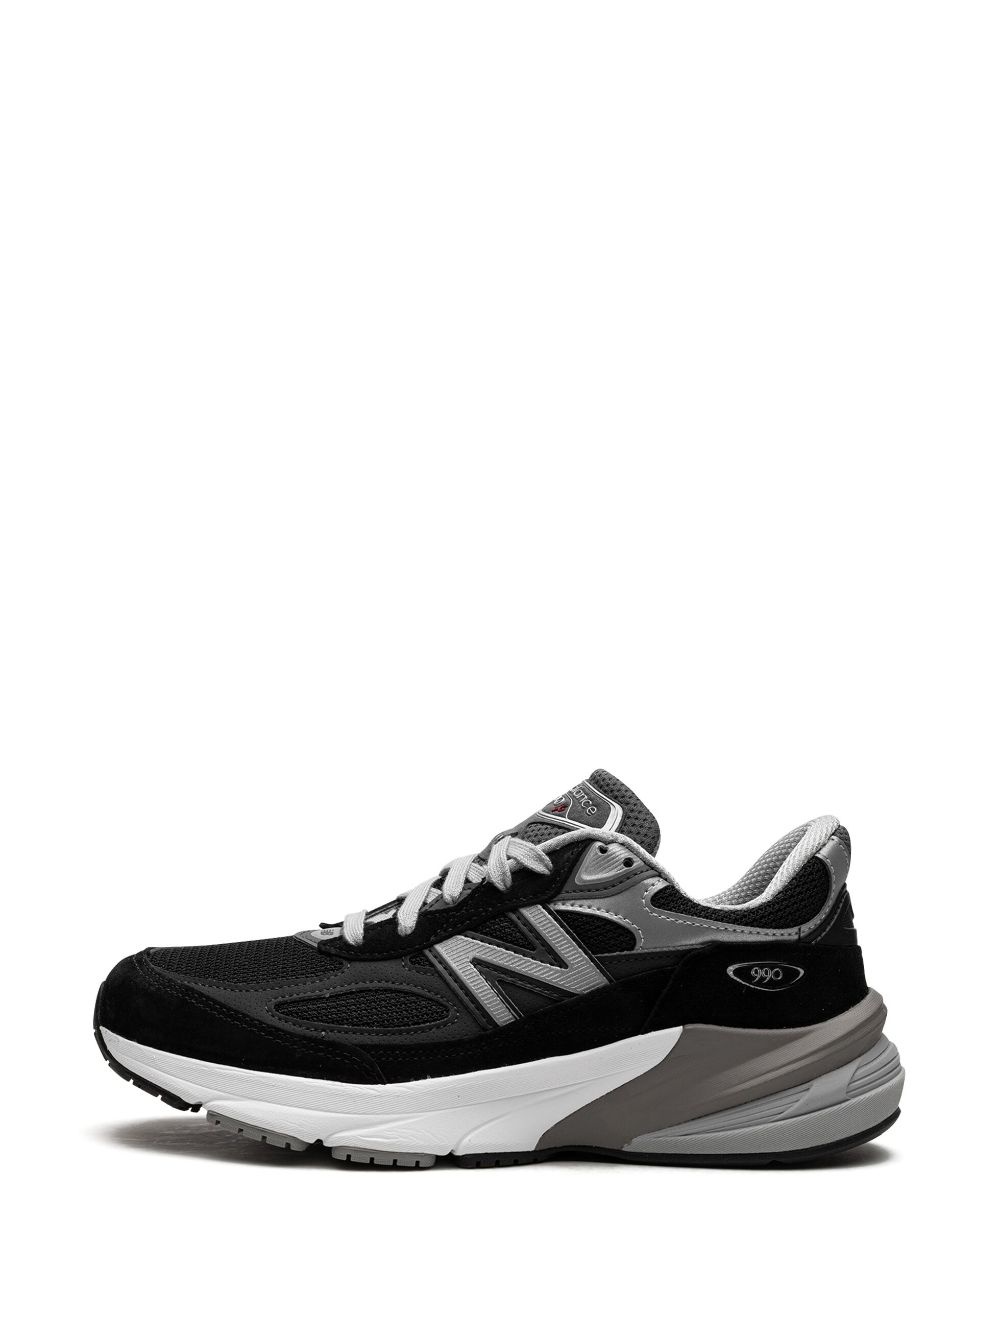 990v6 "Black/Silver" sneakers - 5